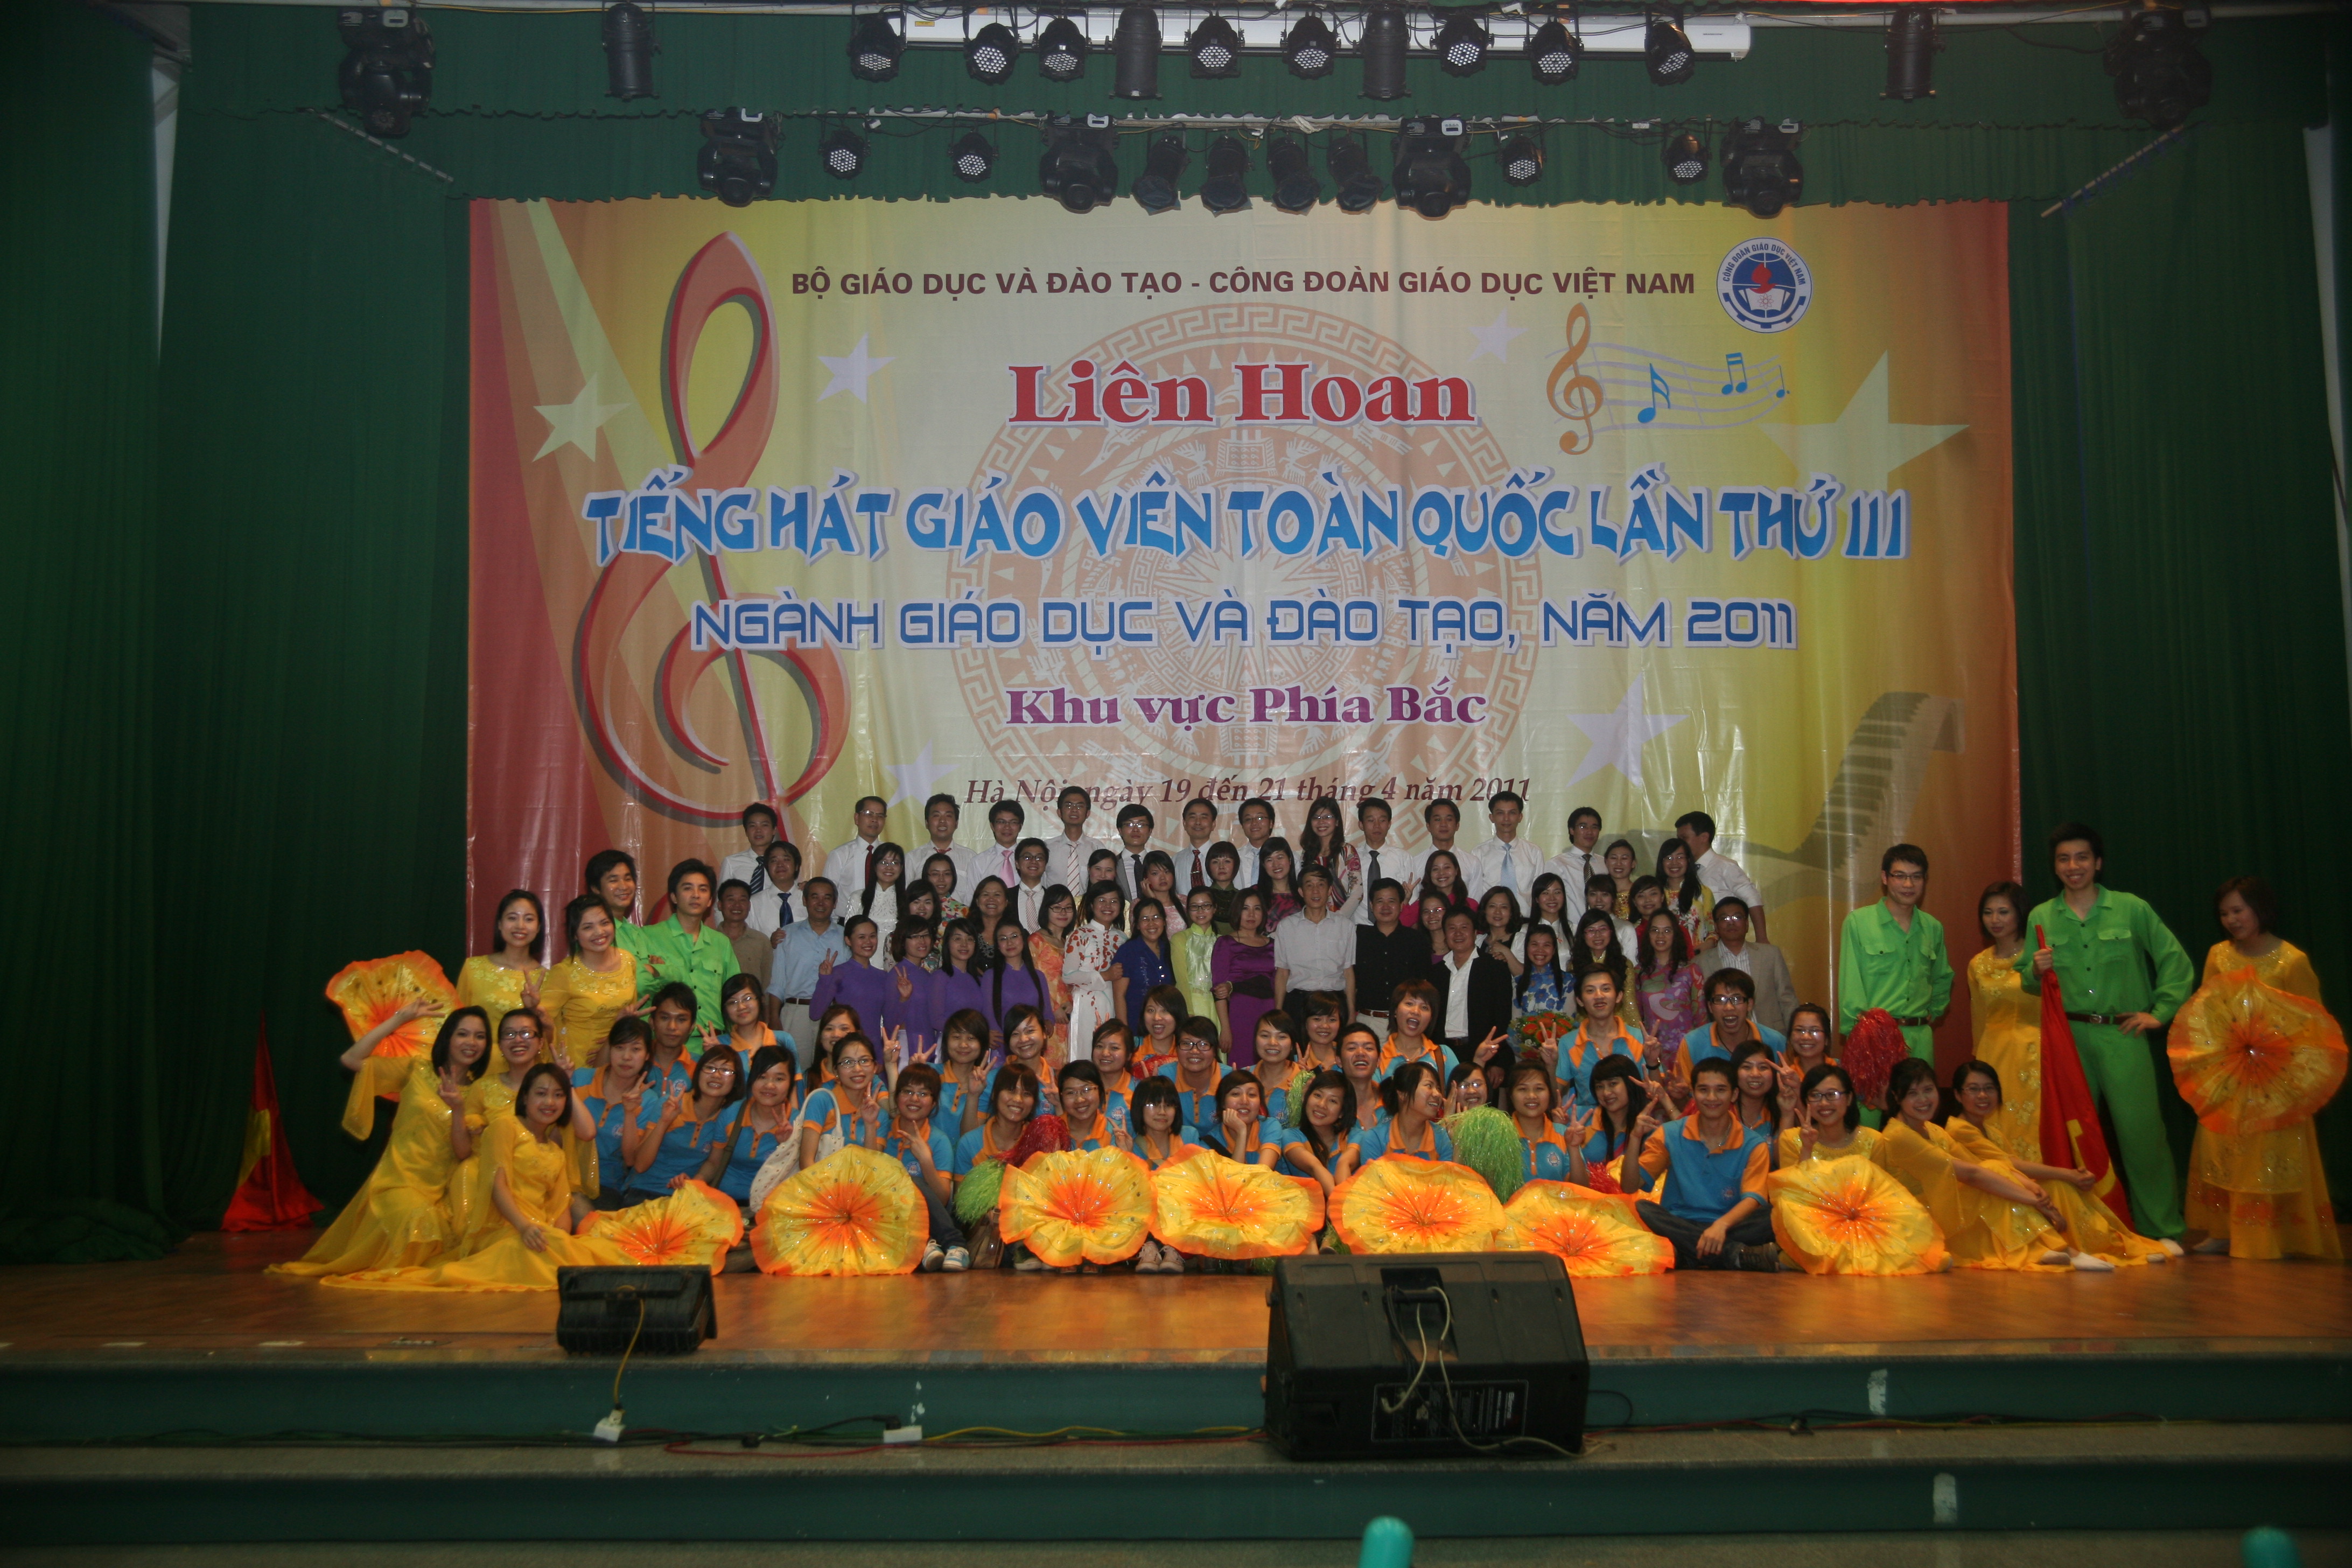 Trường đại học Thương mại tham gia Liên hoan tiếng hát giáo viên toàn quốc lần thứ III, năm 2011